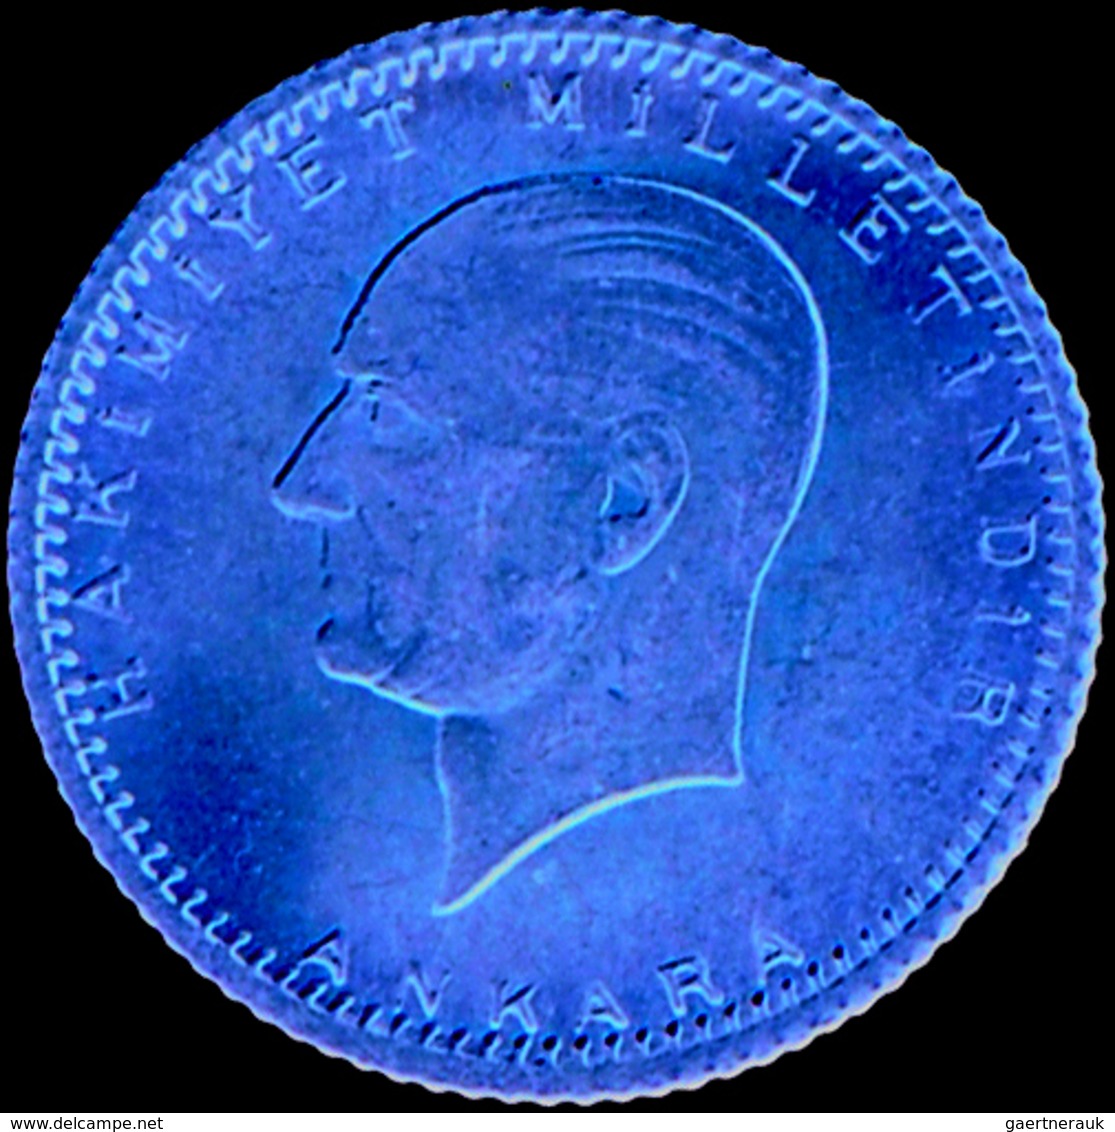 Türkei - Anlagegold: Lot 5 Goldmünzen mit Präsident Kemal Atatürk: 25 Kurus 1923/40; 50 Kurus 1923/4